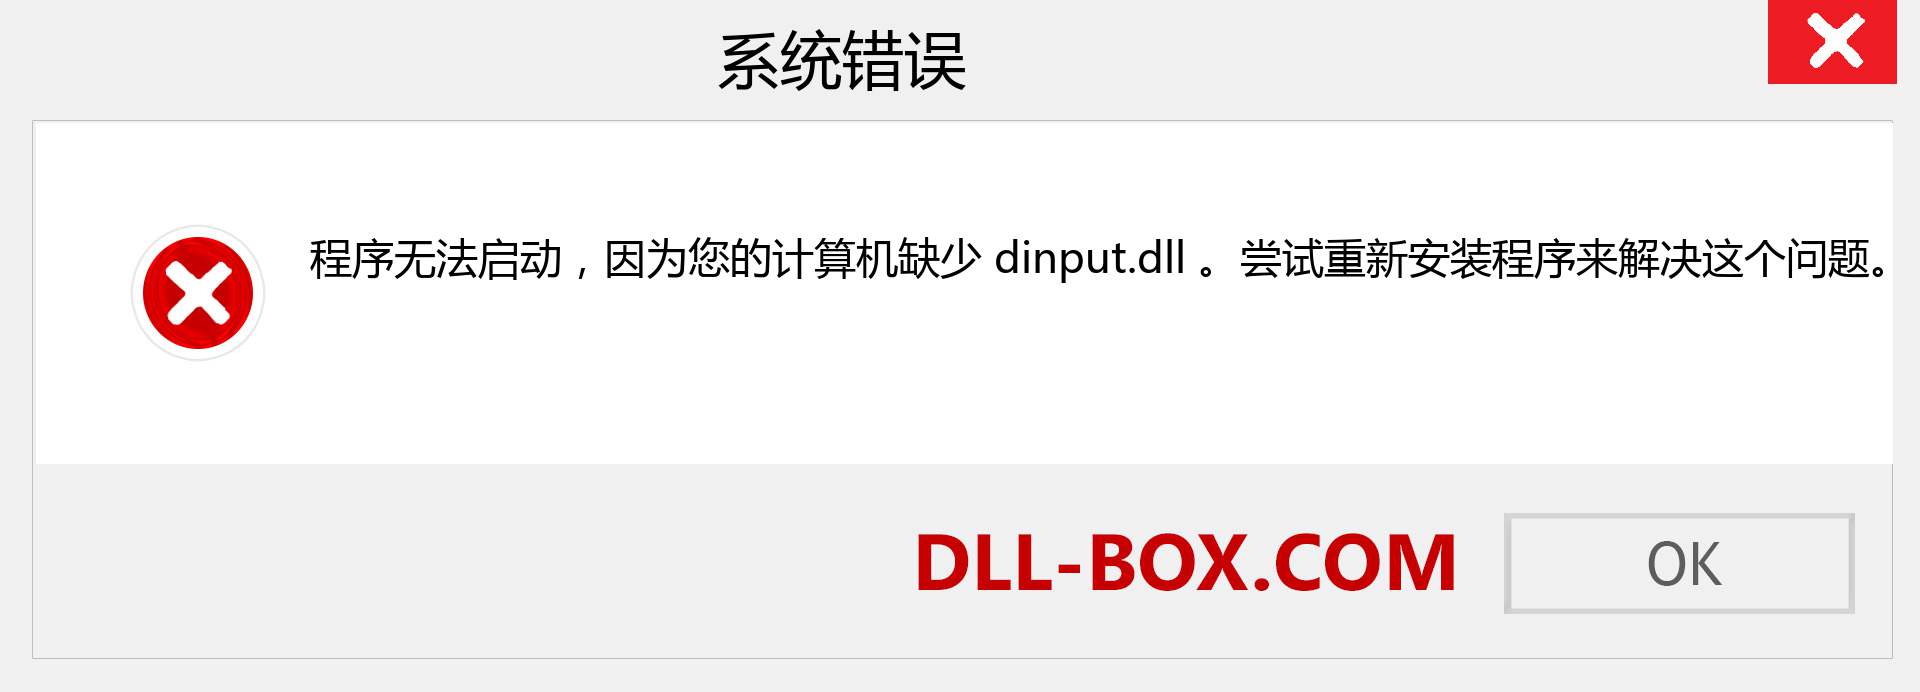 dinput.dll 文件丢失？。 适用于 Windows 7、8、10 的下载 - 修复 Windows、照片、图像上的 dinput dll 丢失错误